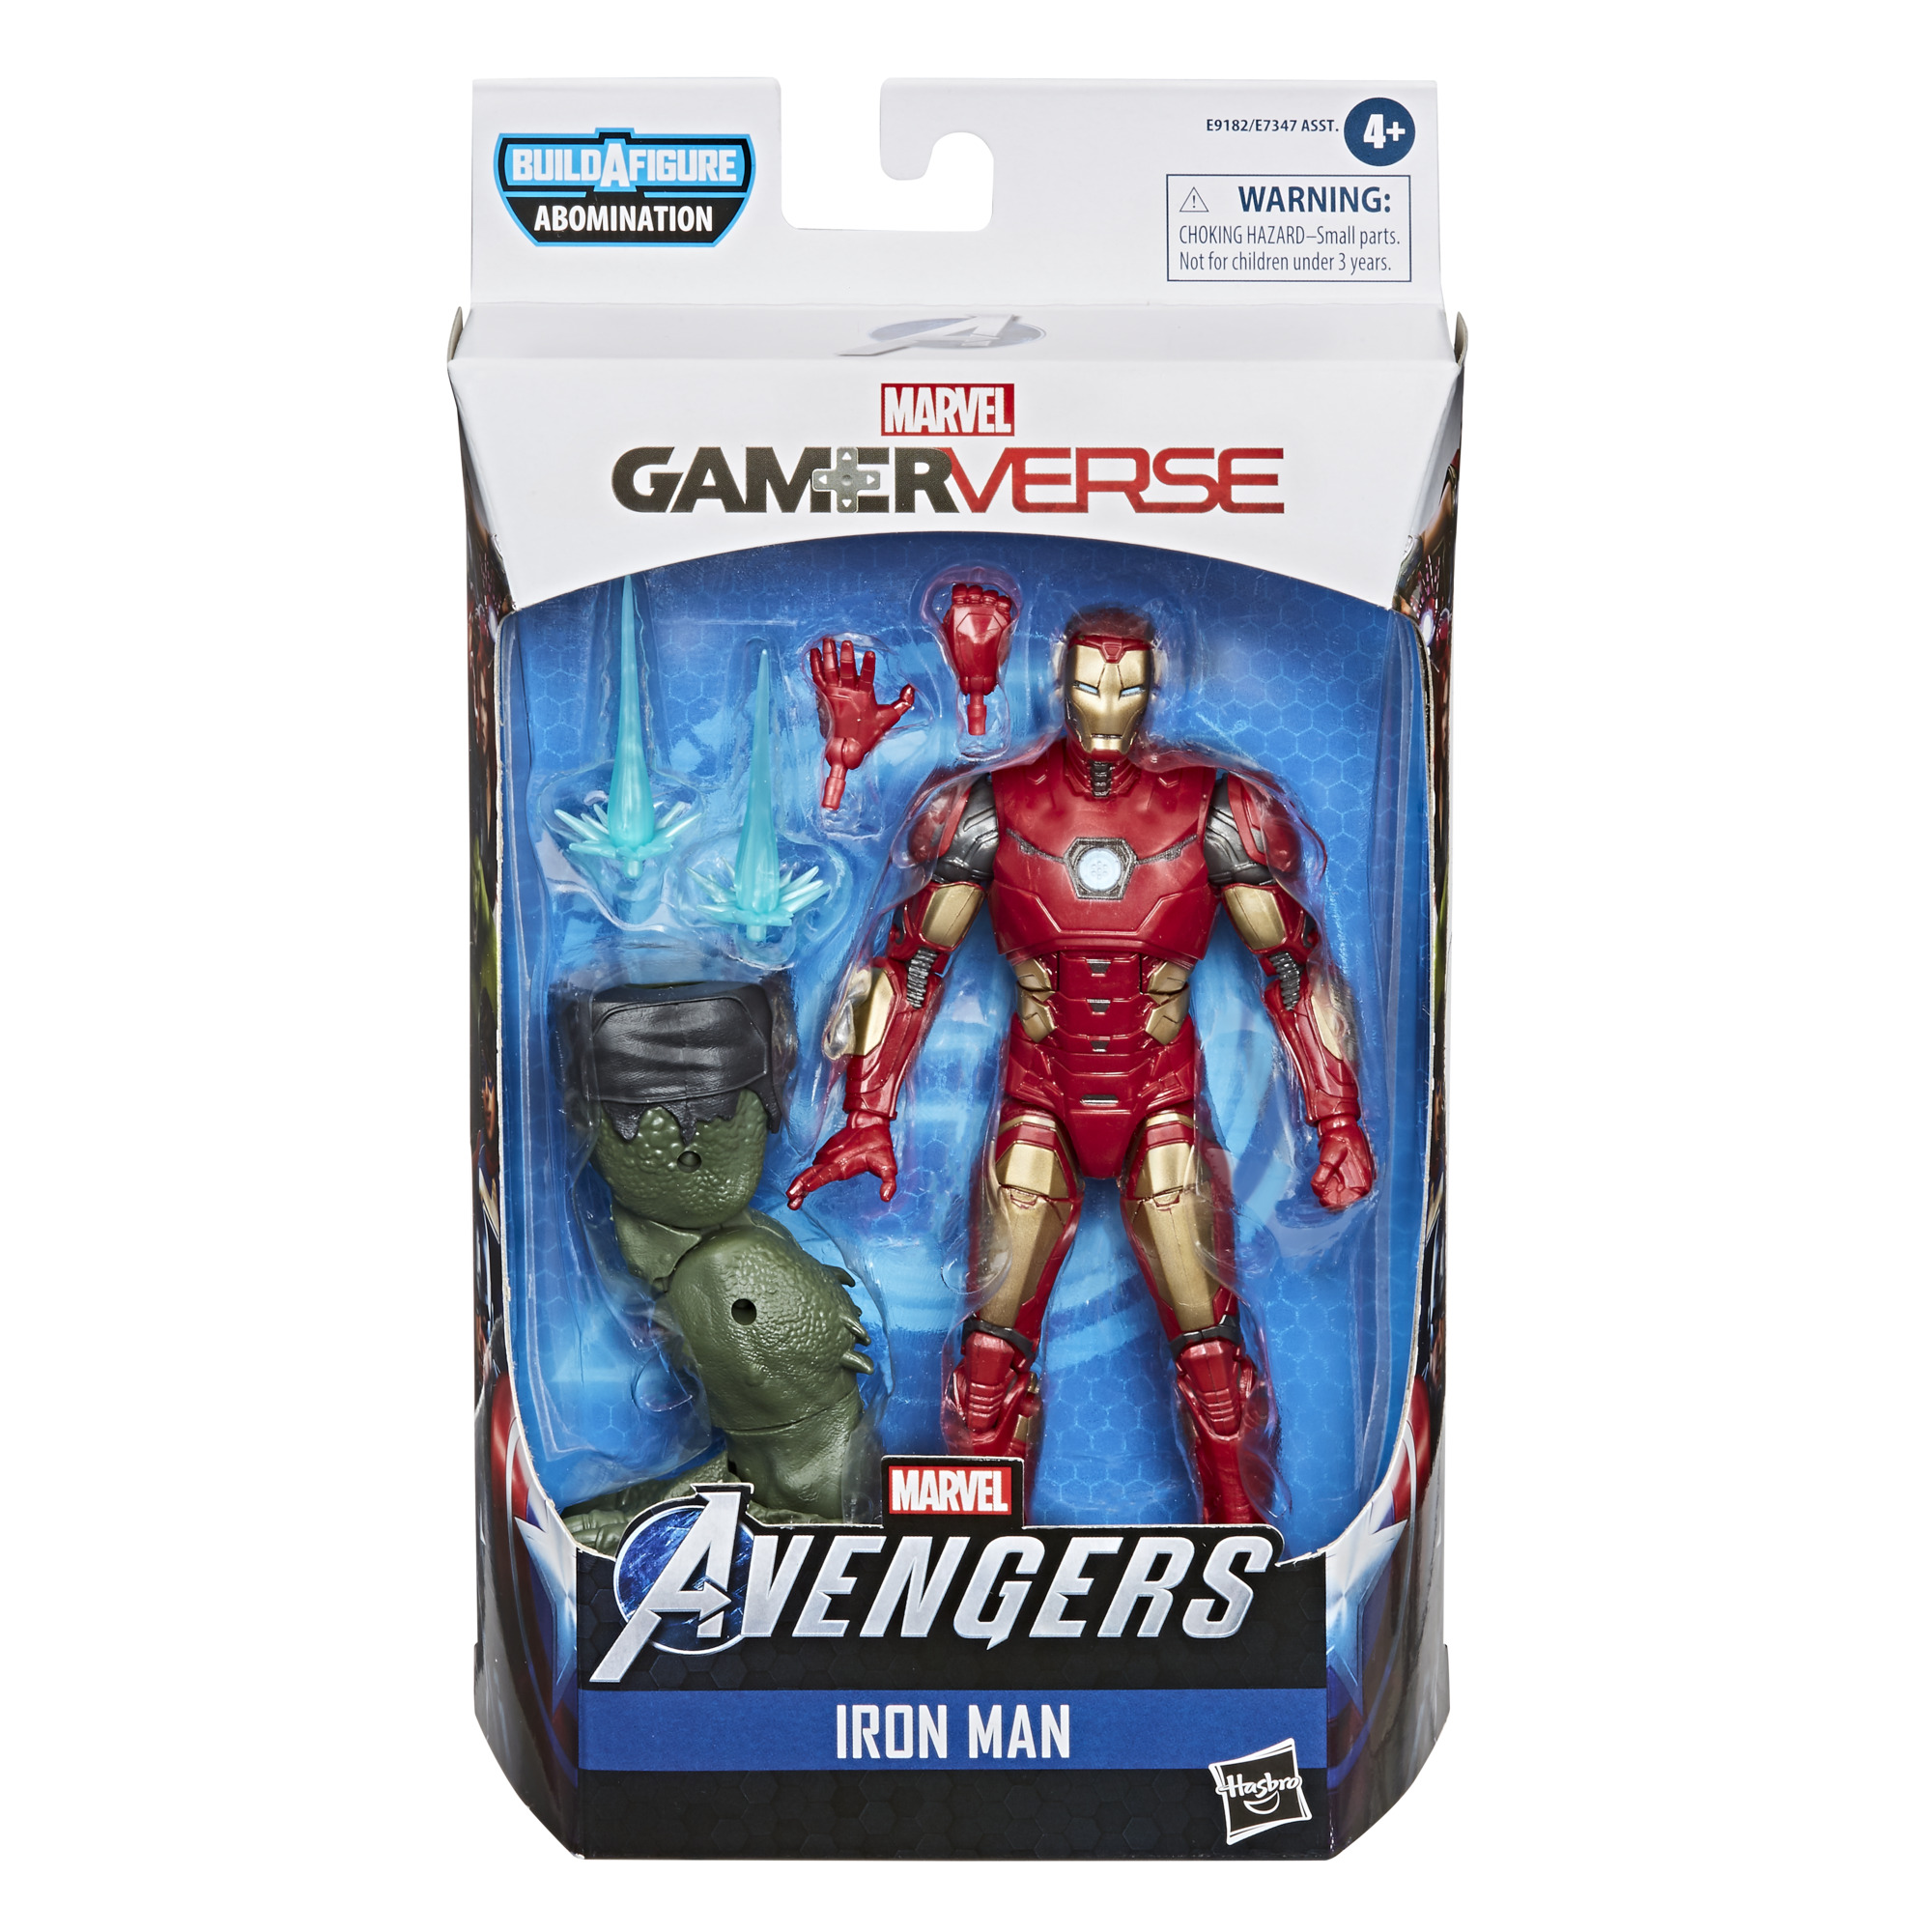 Gamerverse Iron Man